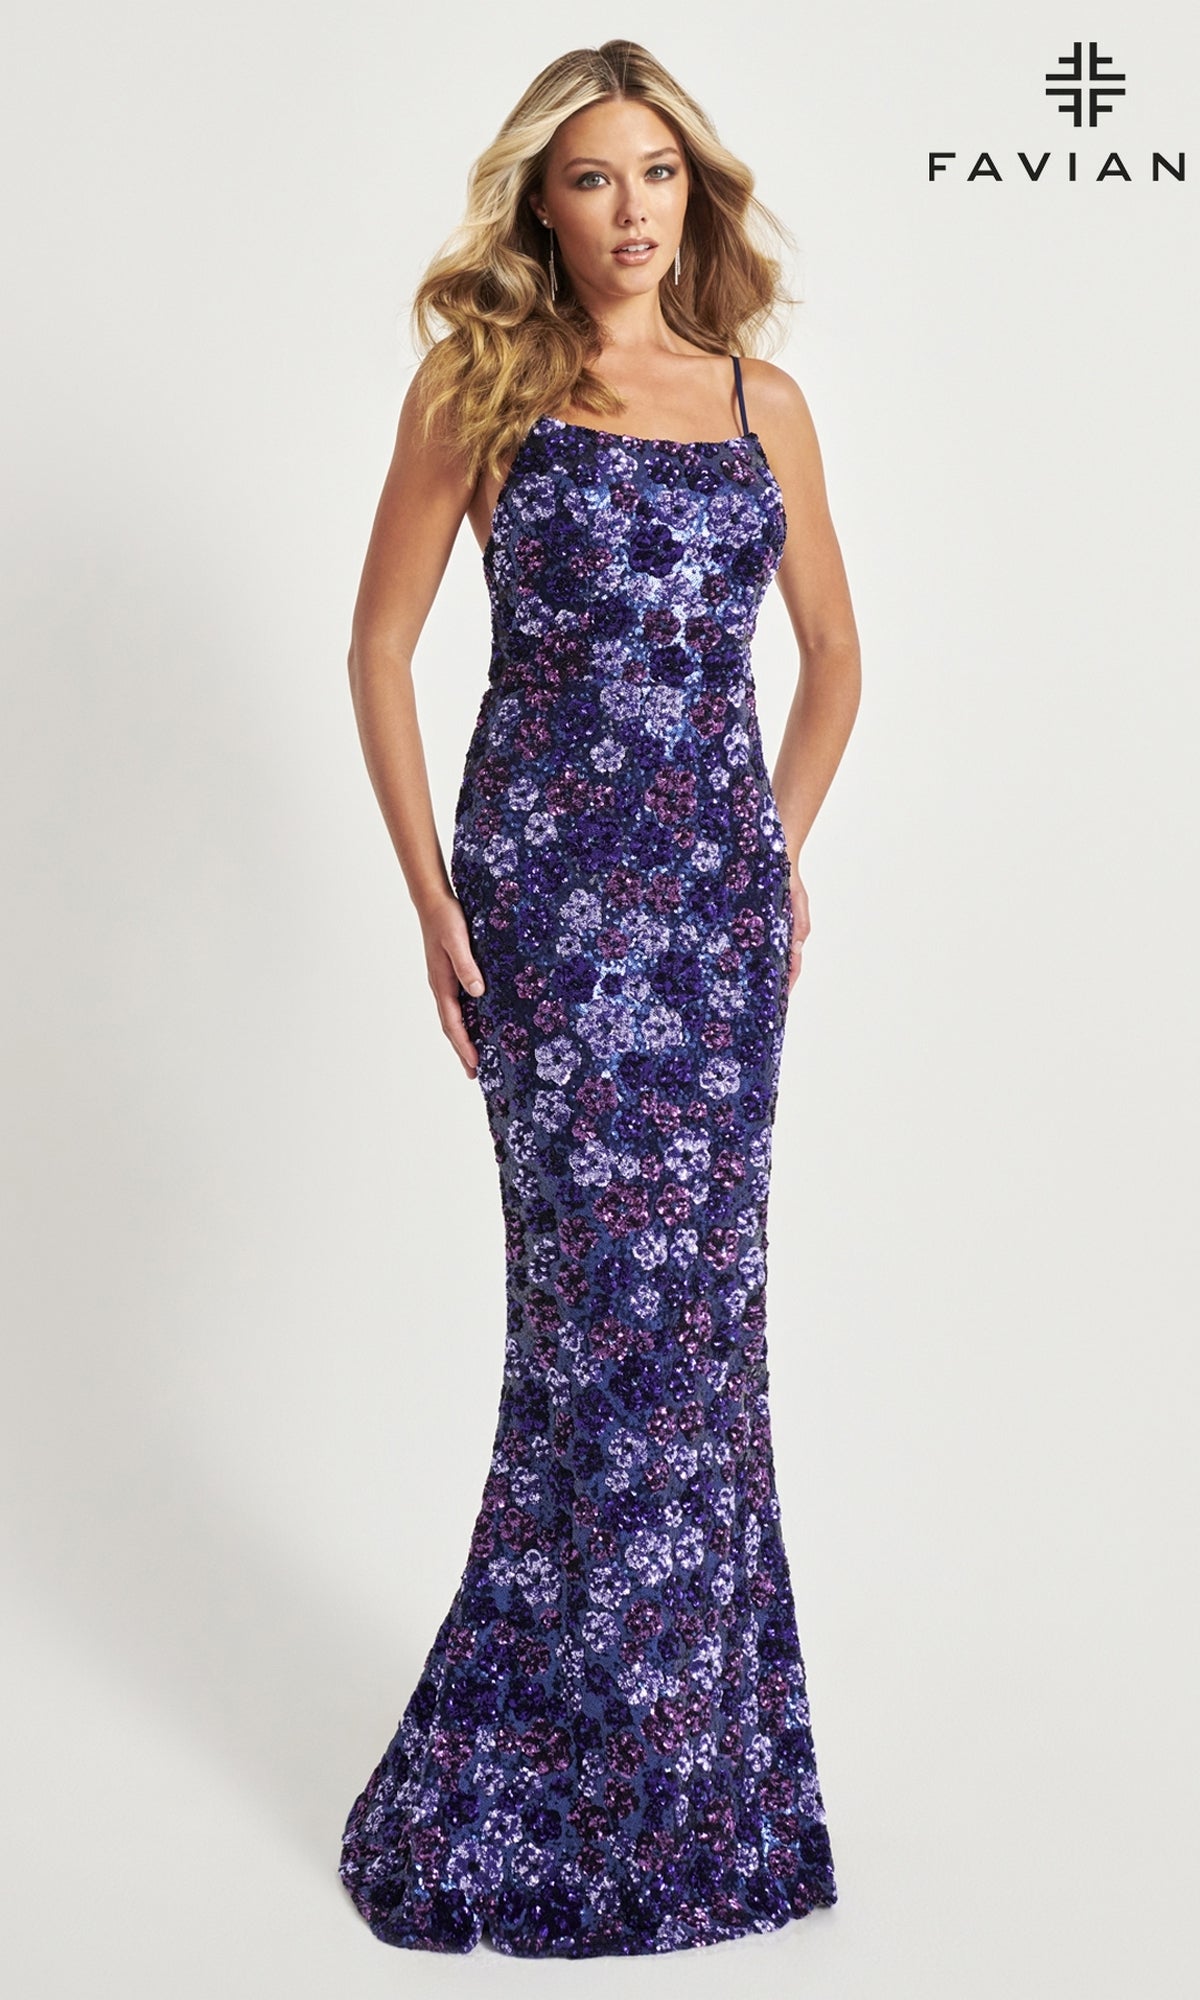 Purple/Navy Long Formal Dress 11037 by Faviana